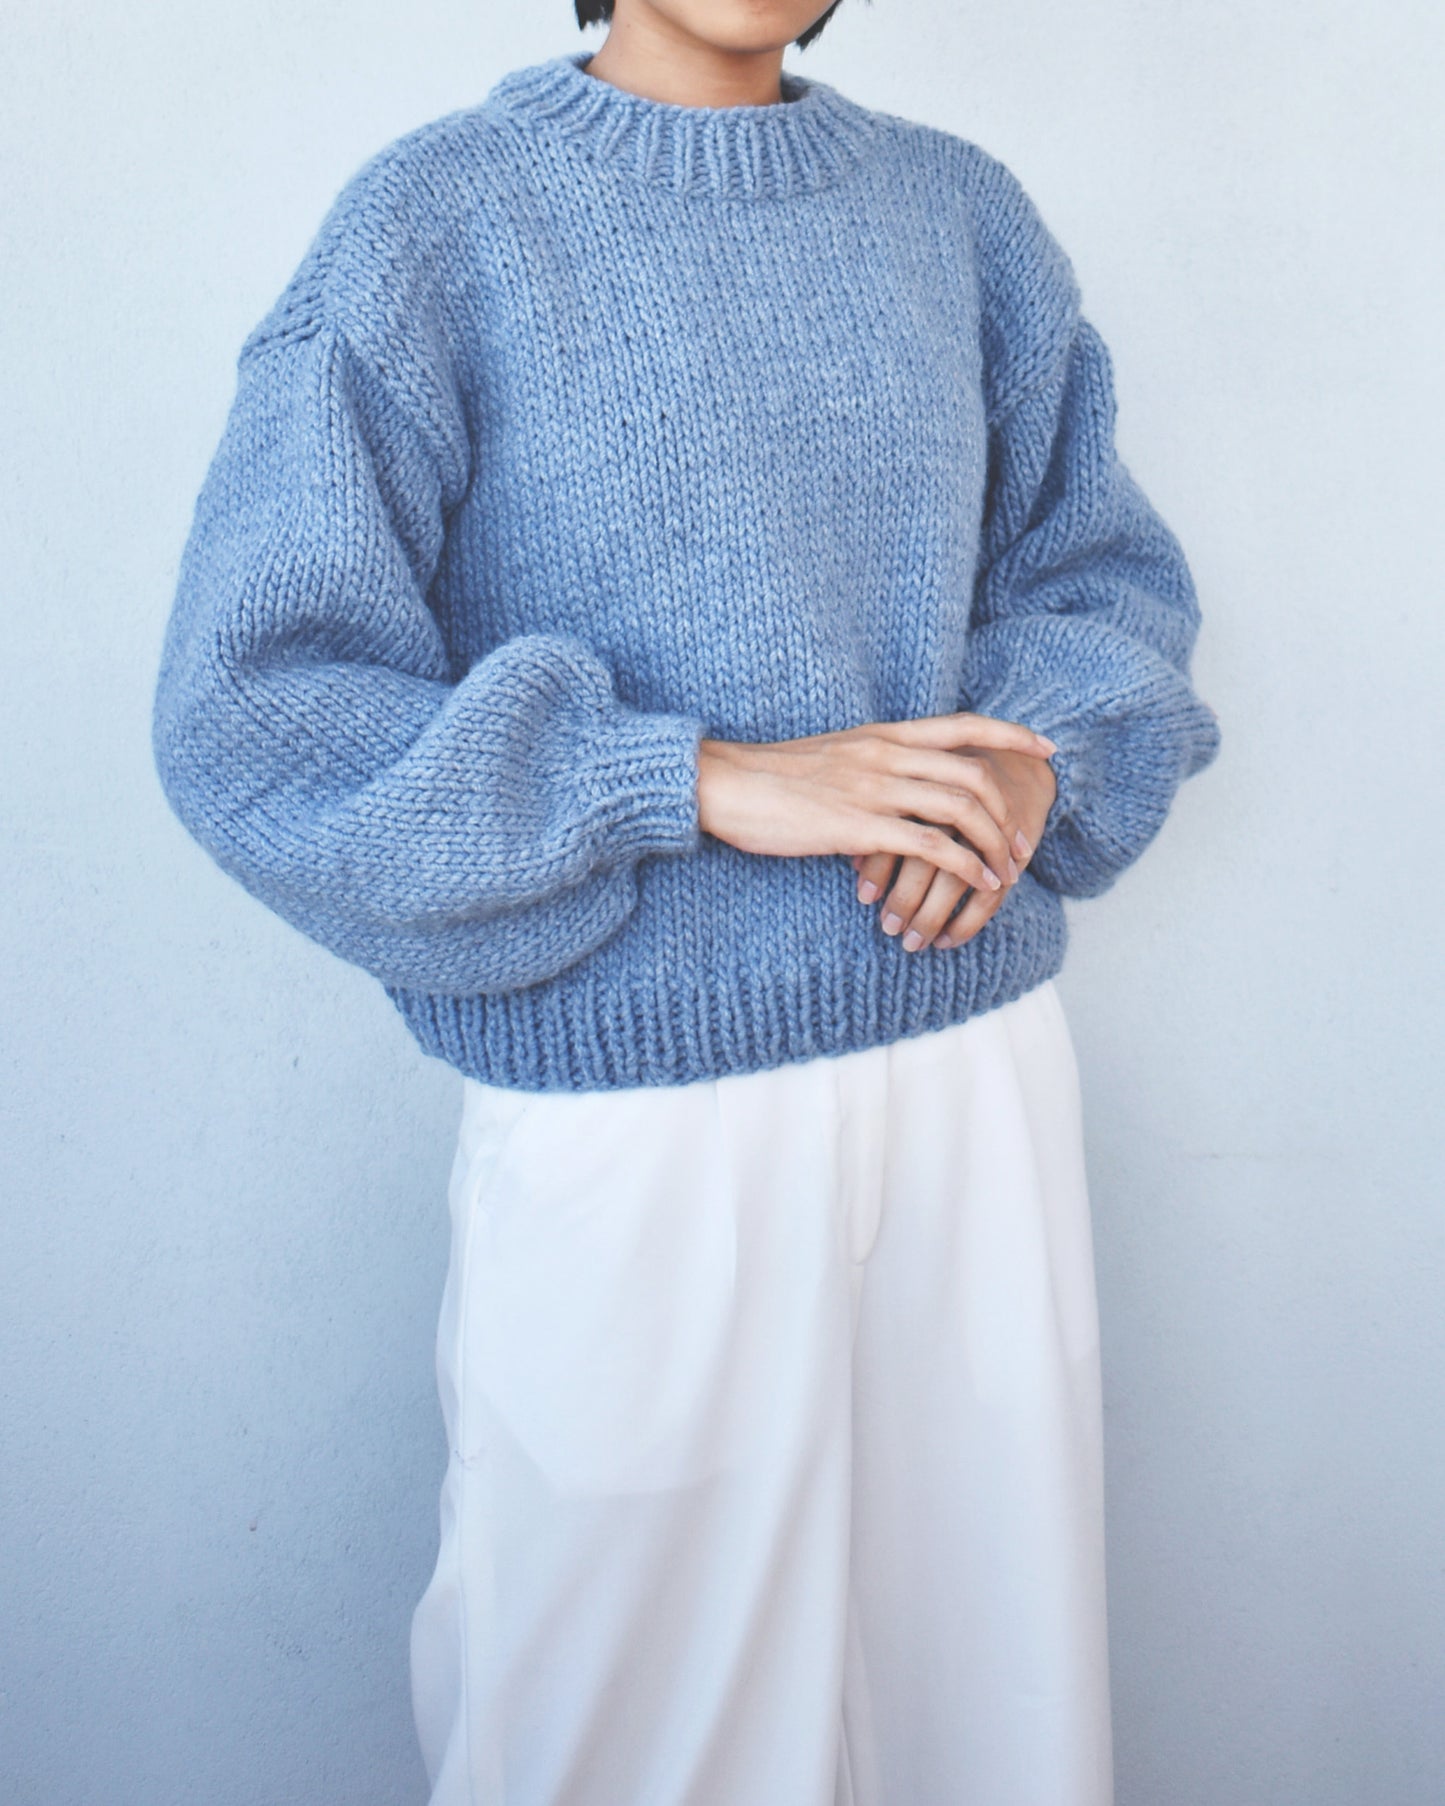 Sweater No.15 | Chunky sweater knitting pattern